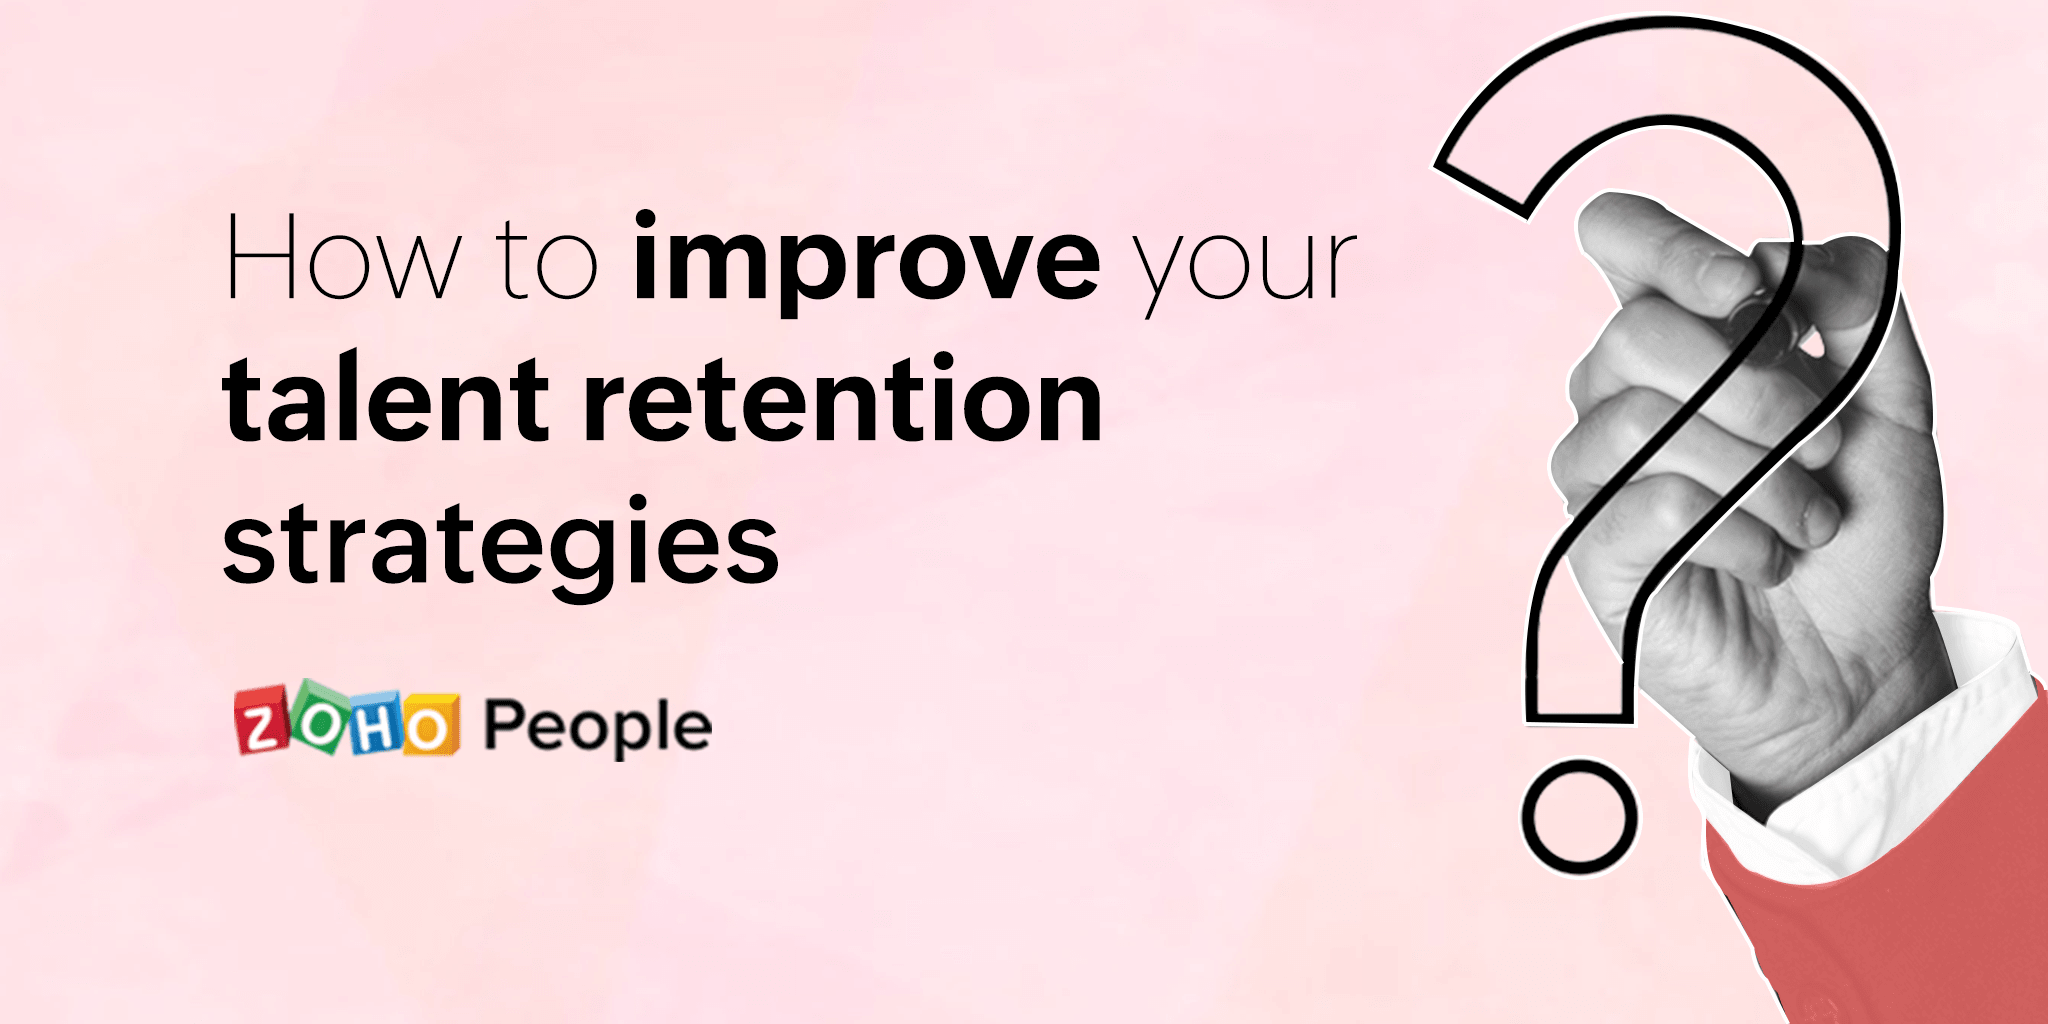 Talent retention strategies